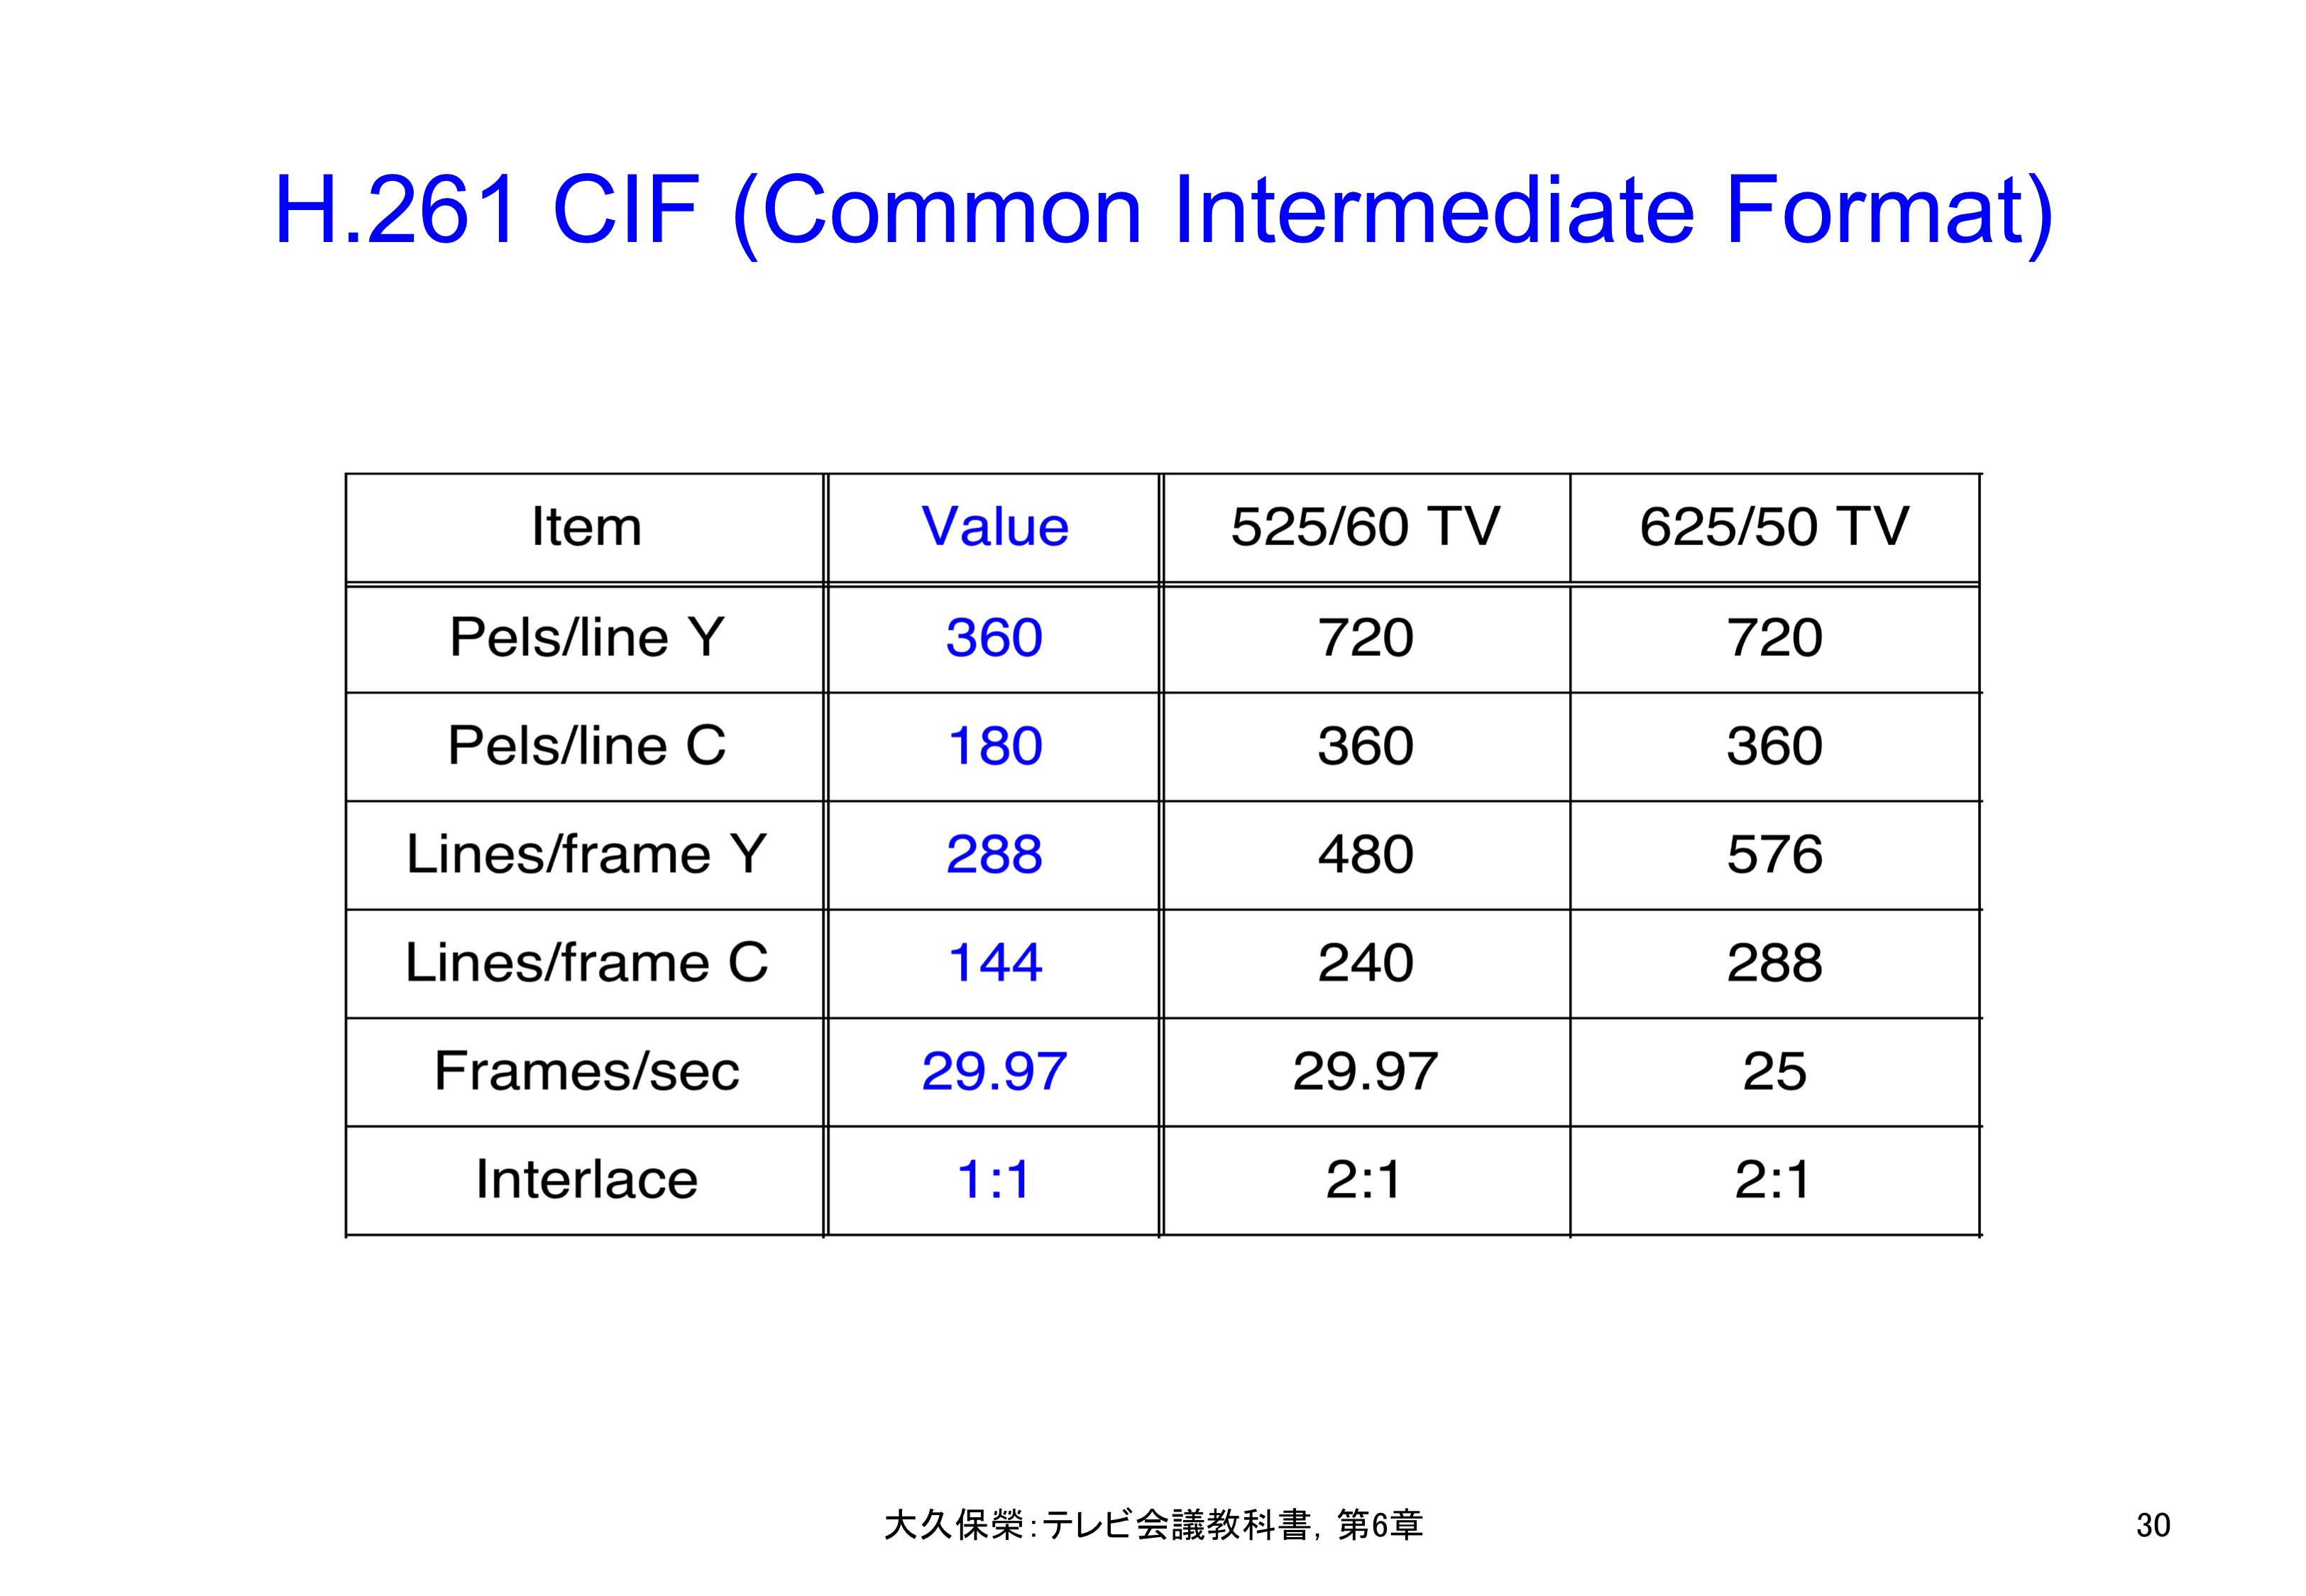 図6-30 H.261 CIF (Common Intermediate Format)